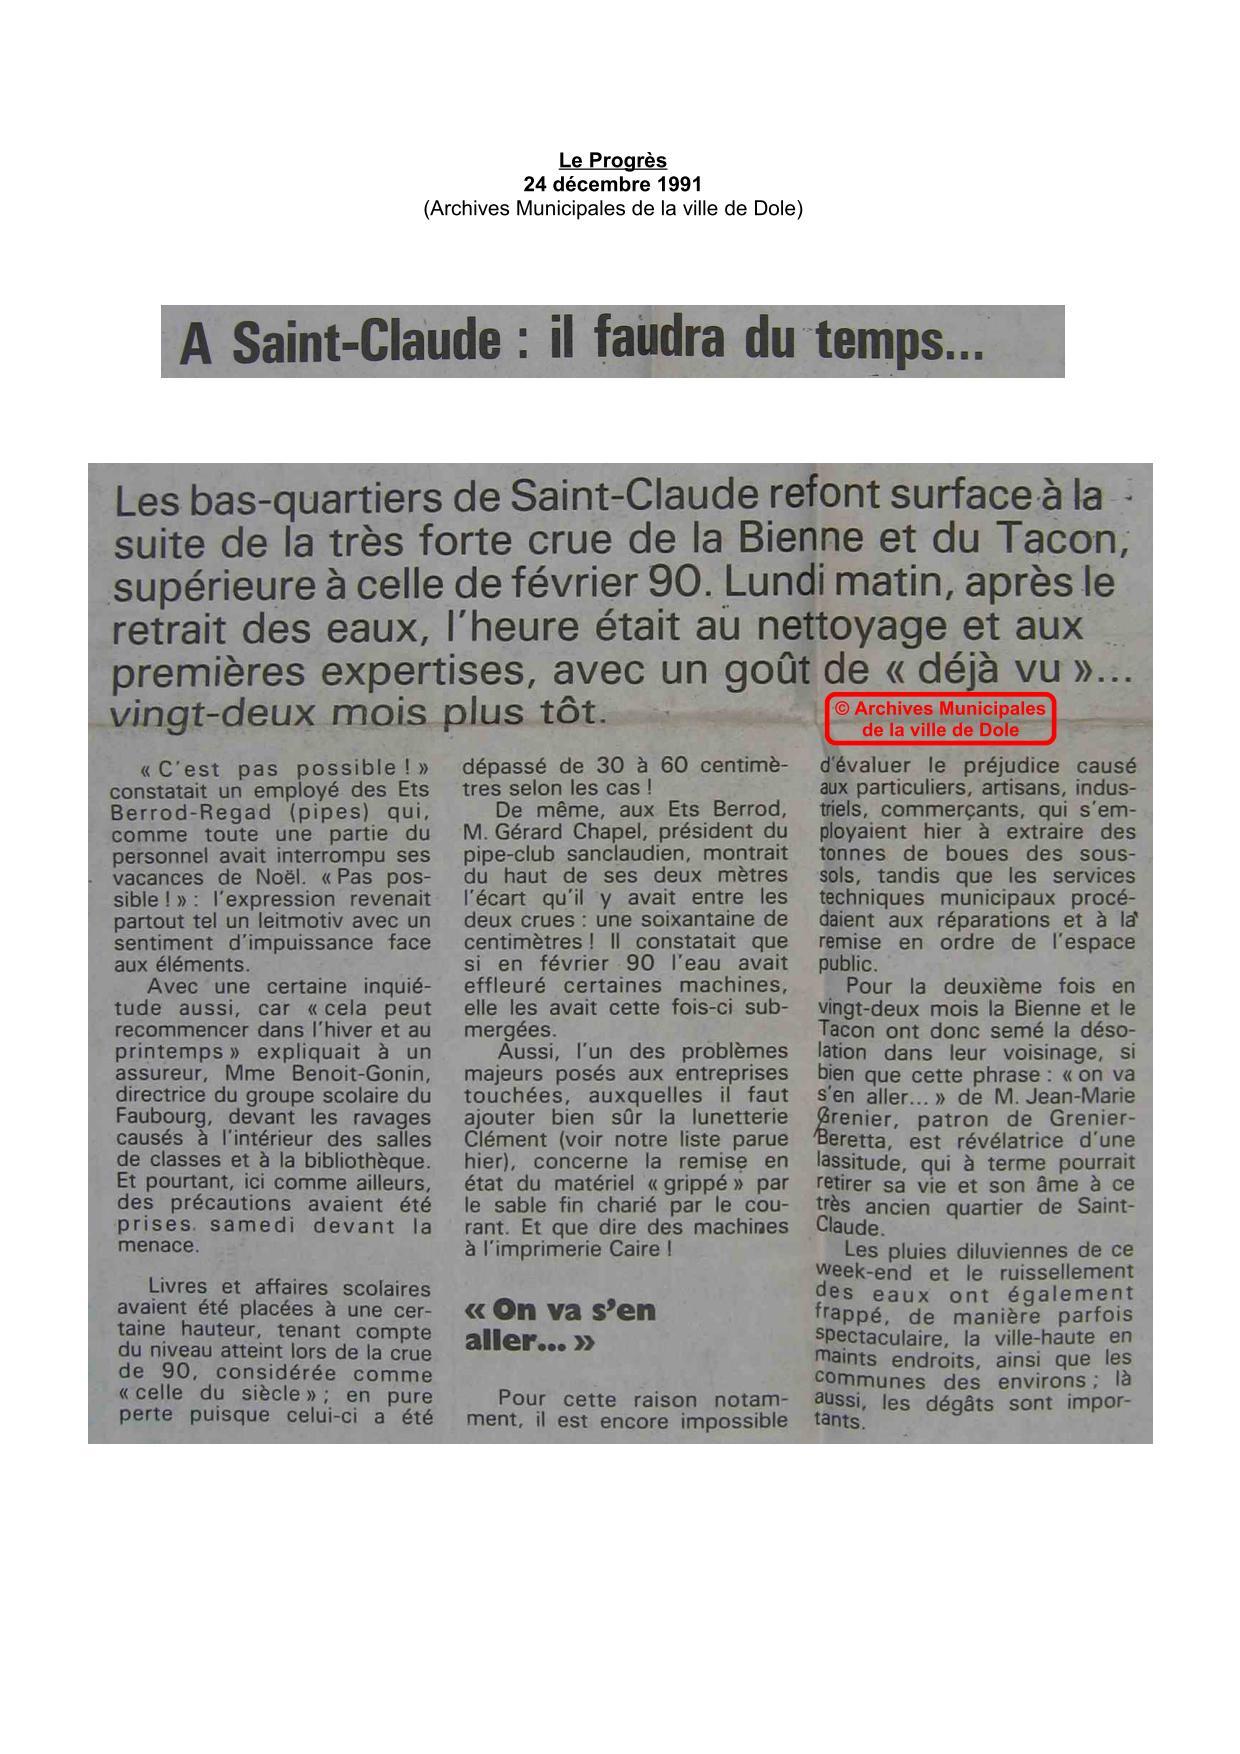 Journal - Le Progrès - 1991 - Saint Claude